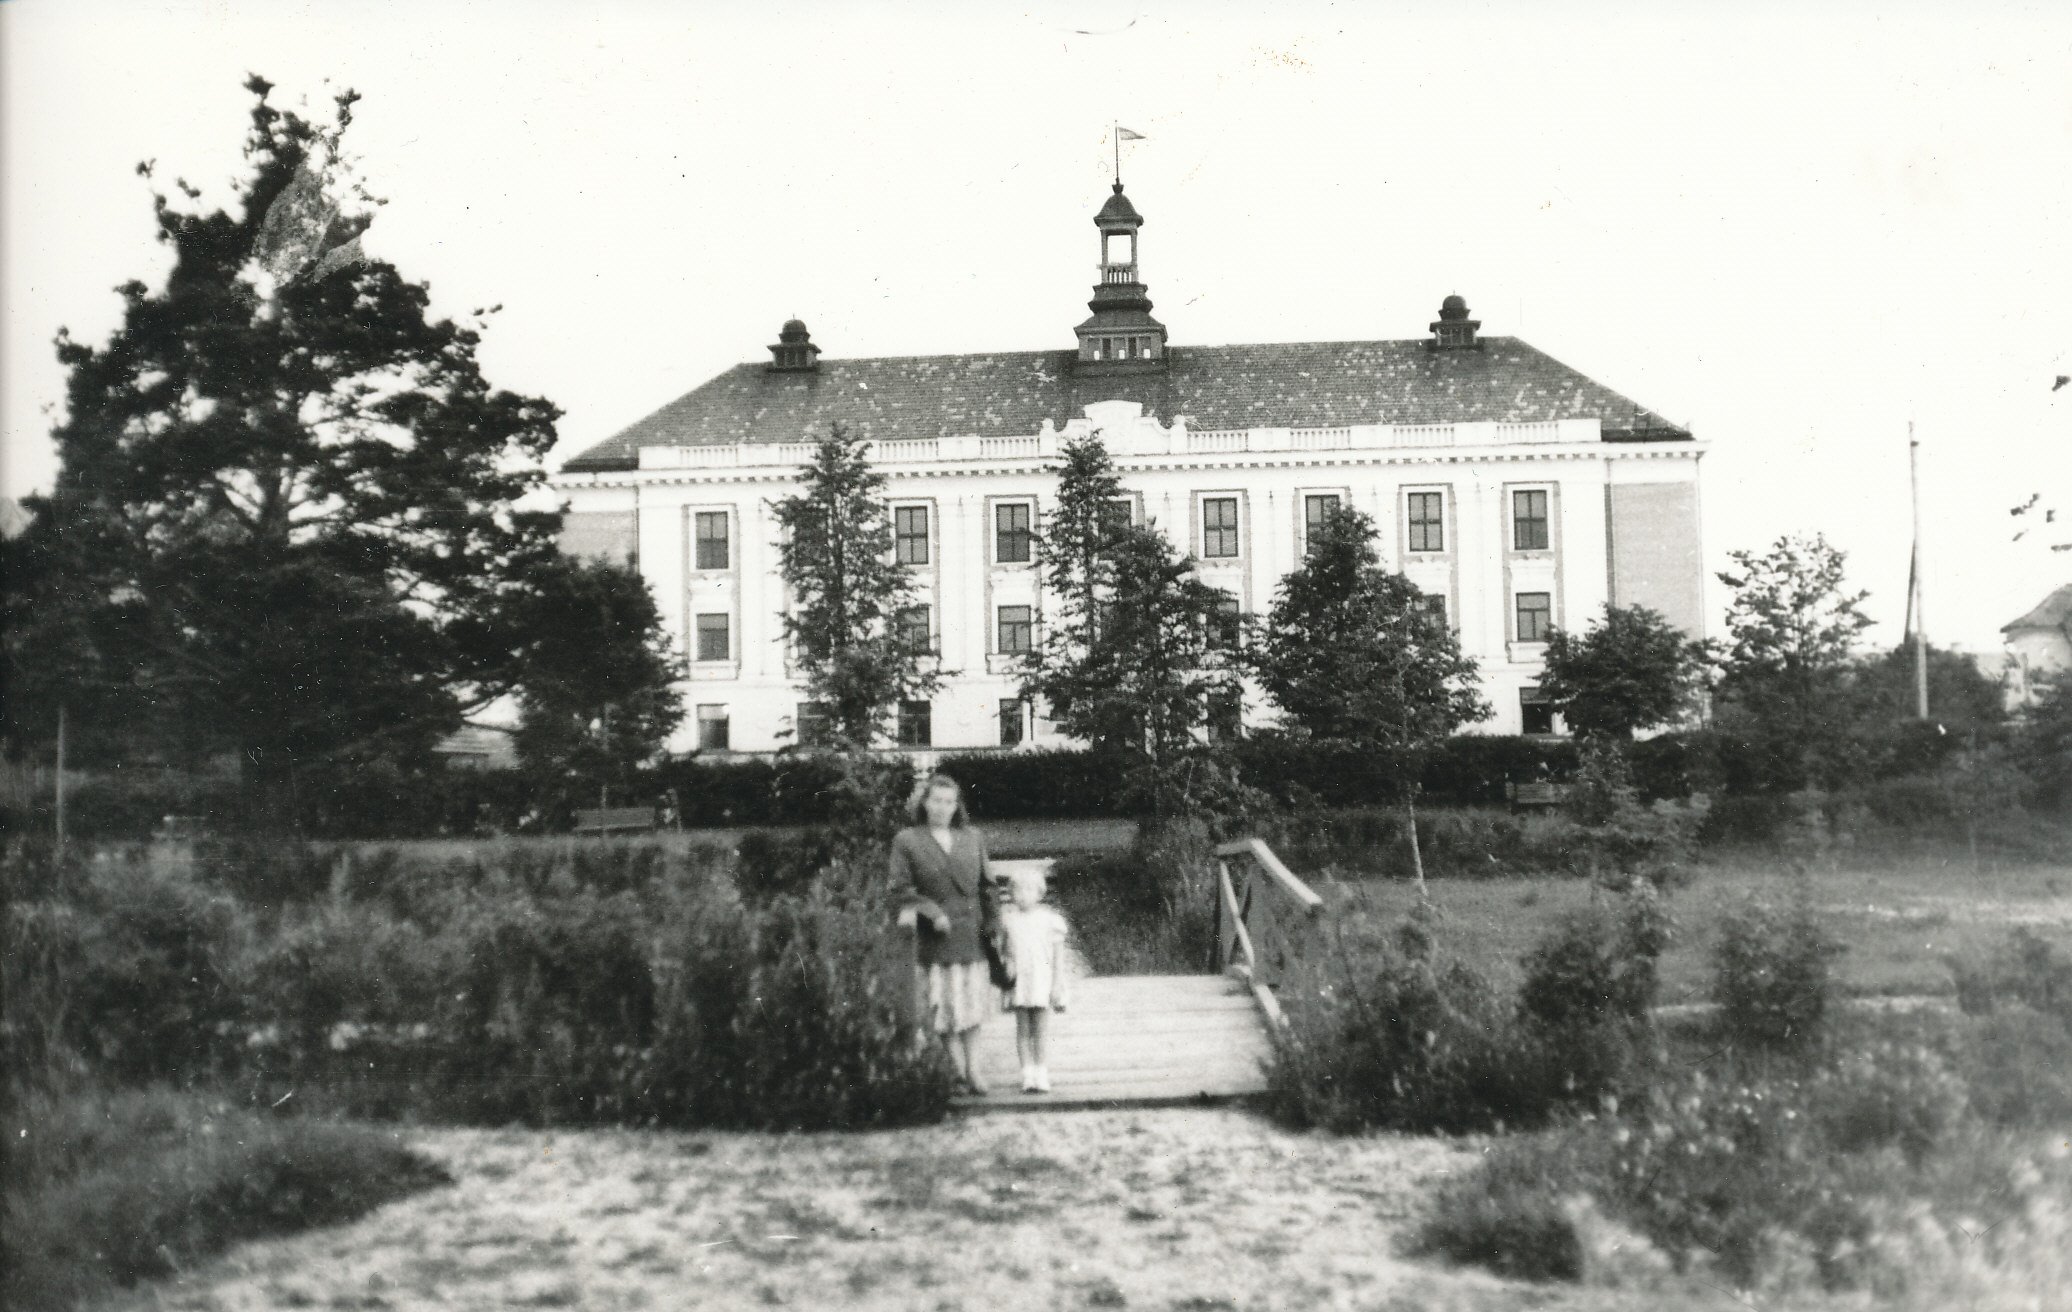 Foto. Vastseliina rajooni administratiivhoone 1955. aastatal (valminud 1953)